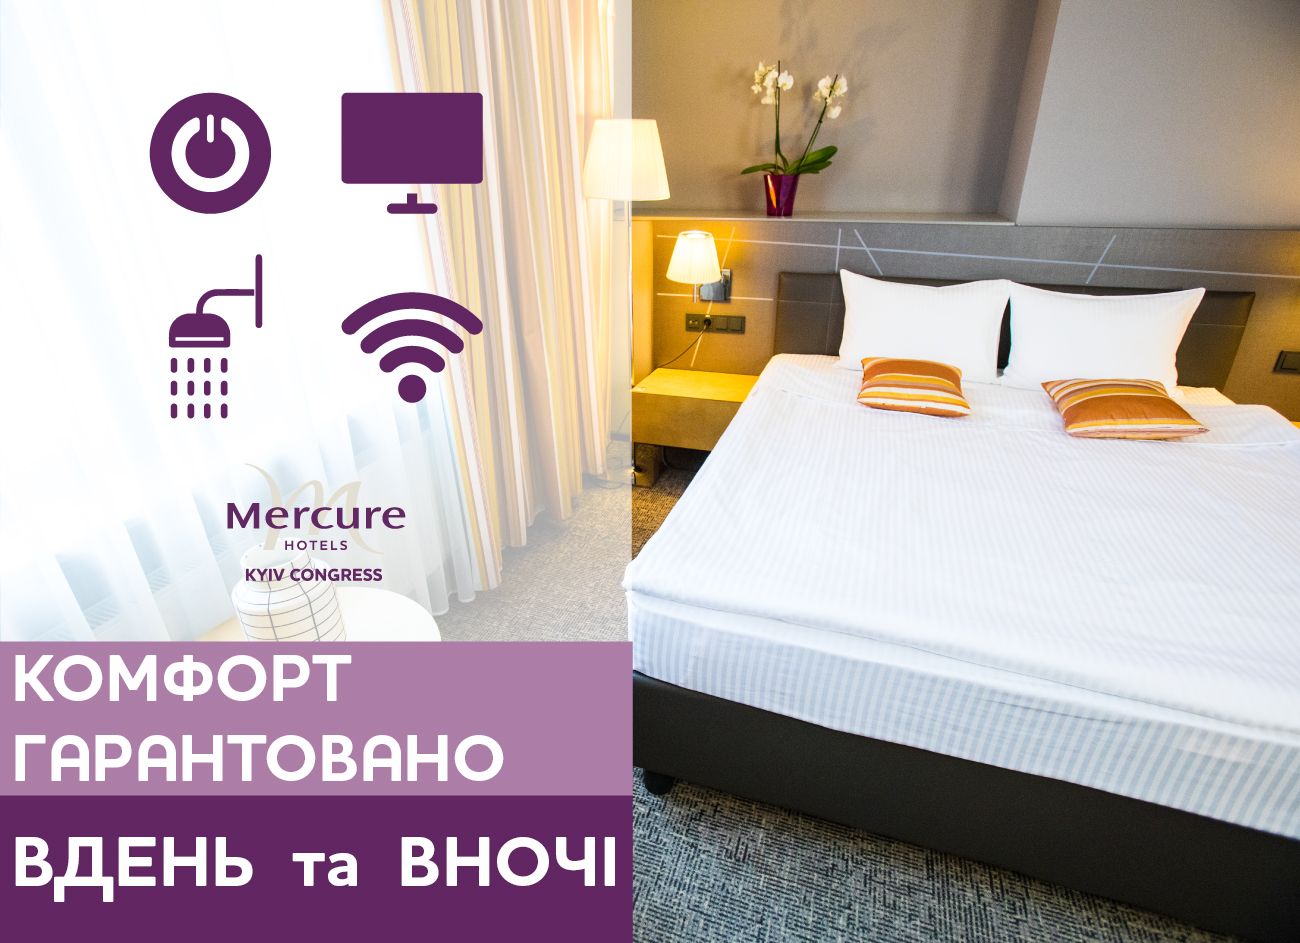 Комфорт и тепло отеля Mercure Kyiv Congress - для наших гостей!